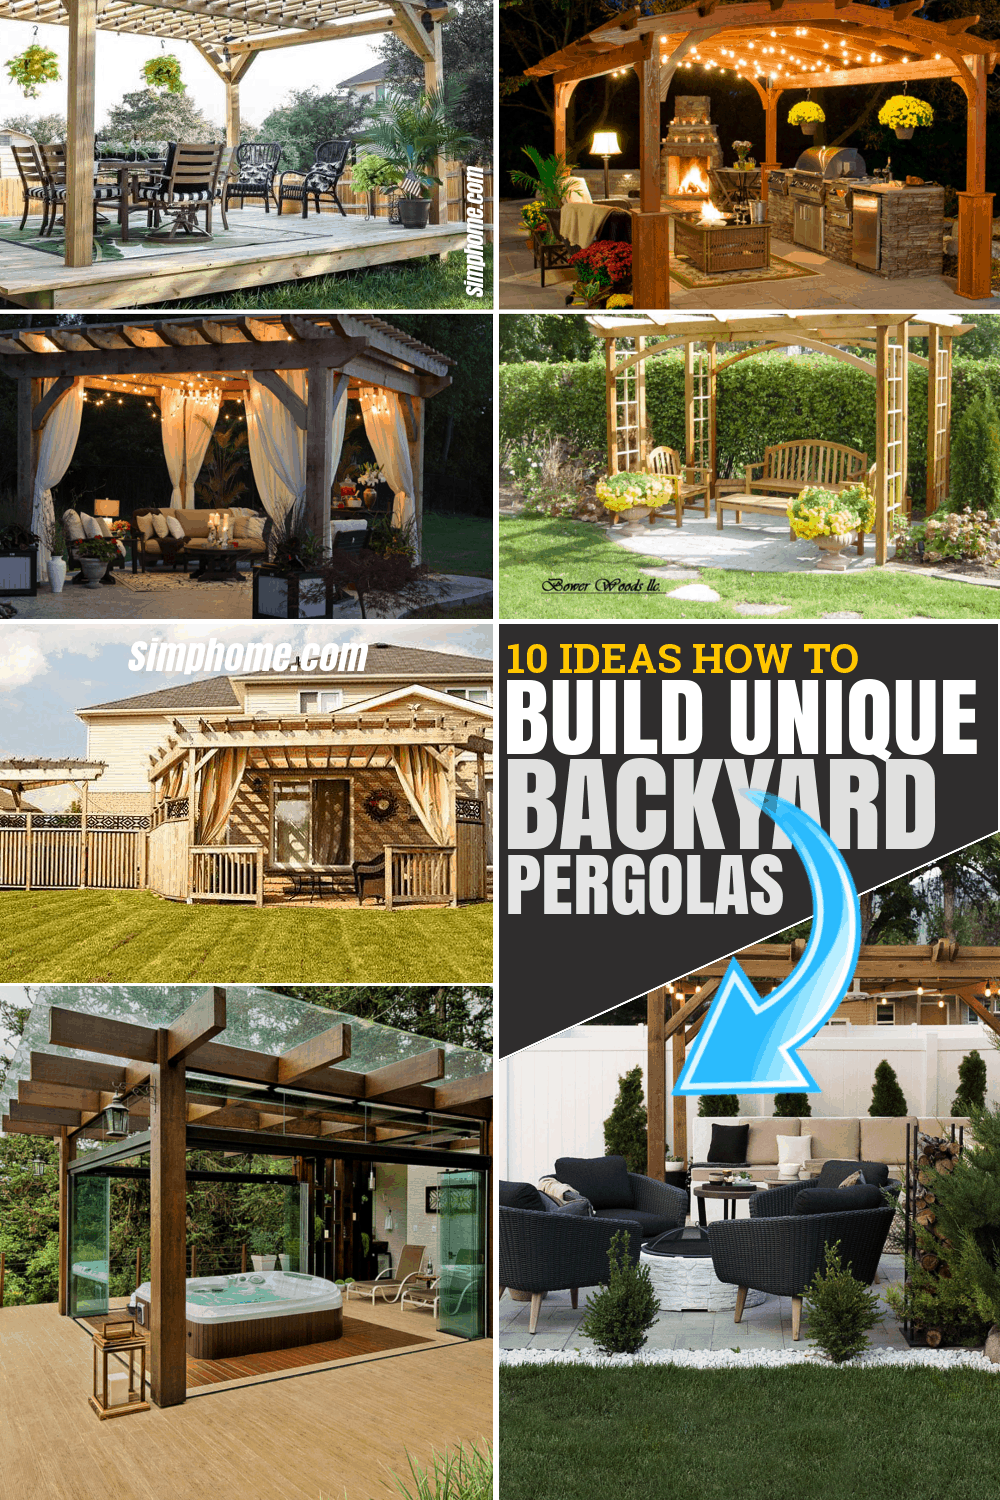 10 ideas Awesome ideas how to build Unique backyard Pergolas Via SIMPHOME.COM Pinterest Featured Image